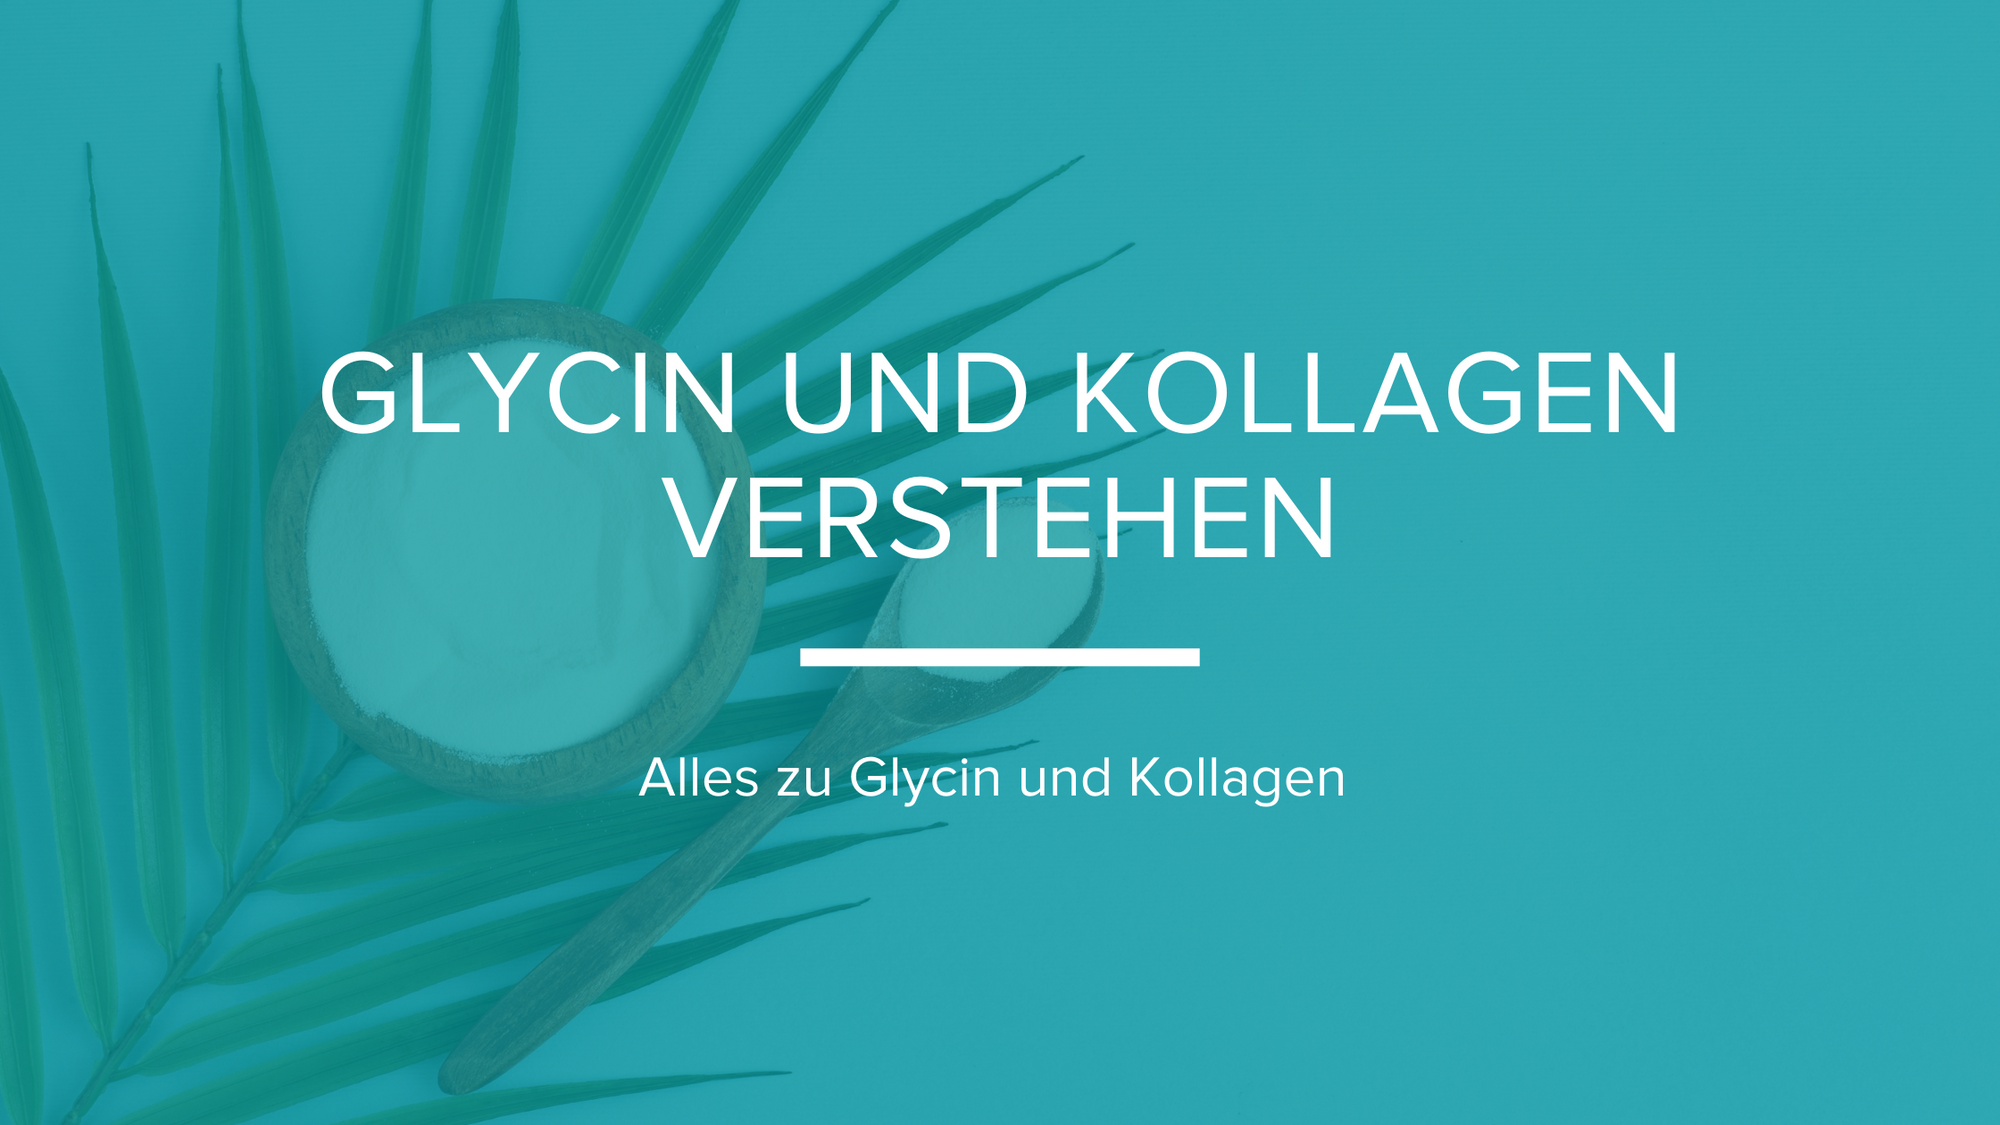 Glycin und Kollagen verstehen - edubily GmbH